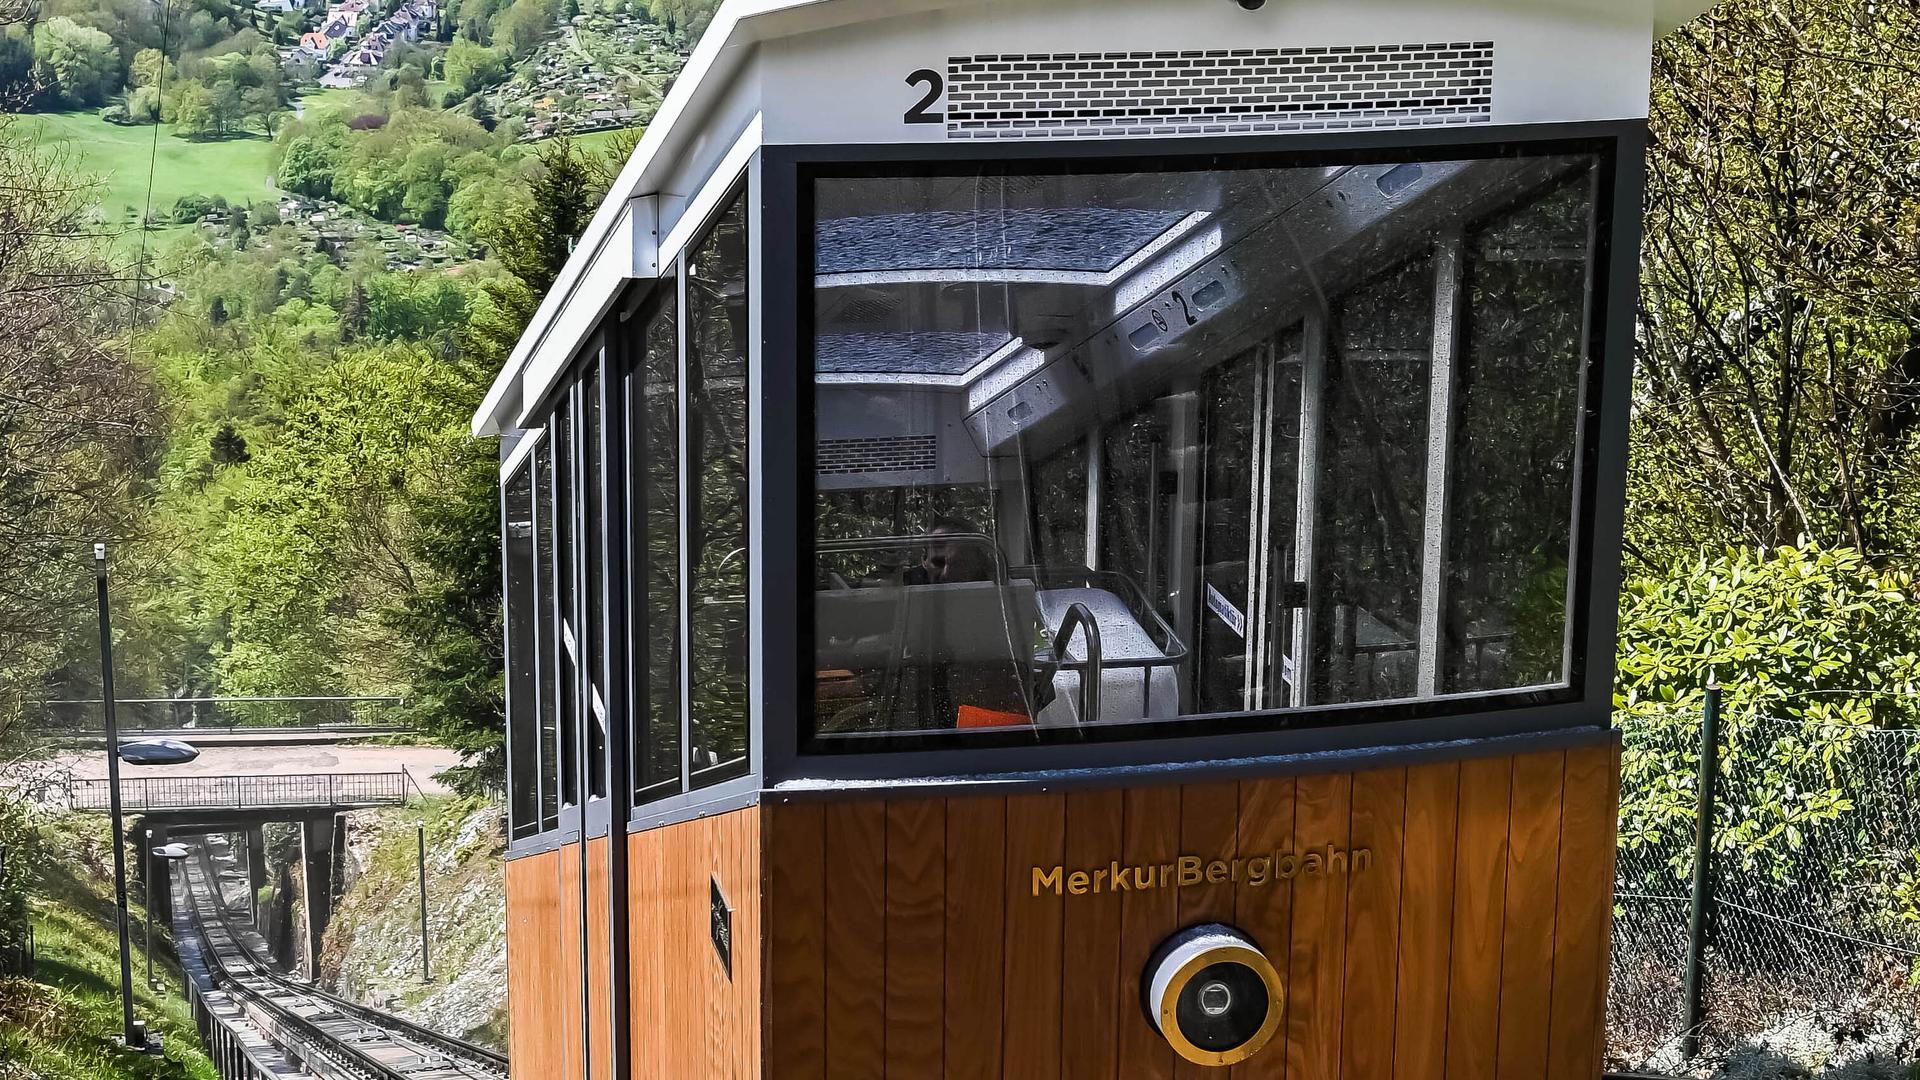 Die Merkurbergbahn fährt ihre Strecke den steilen Hang hinaufauf den Baden-Badener Hausberg Merkur.